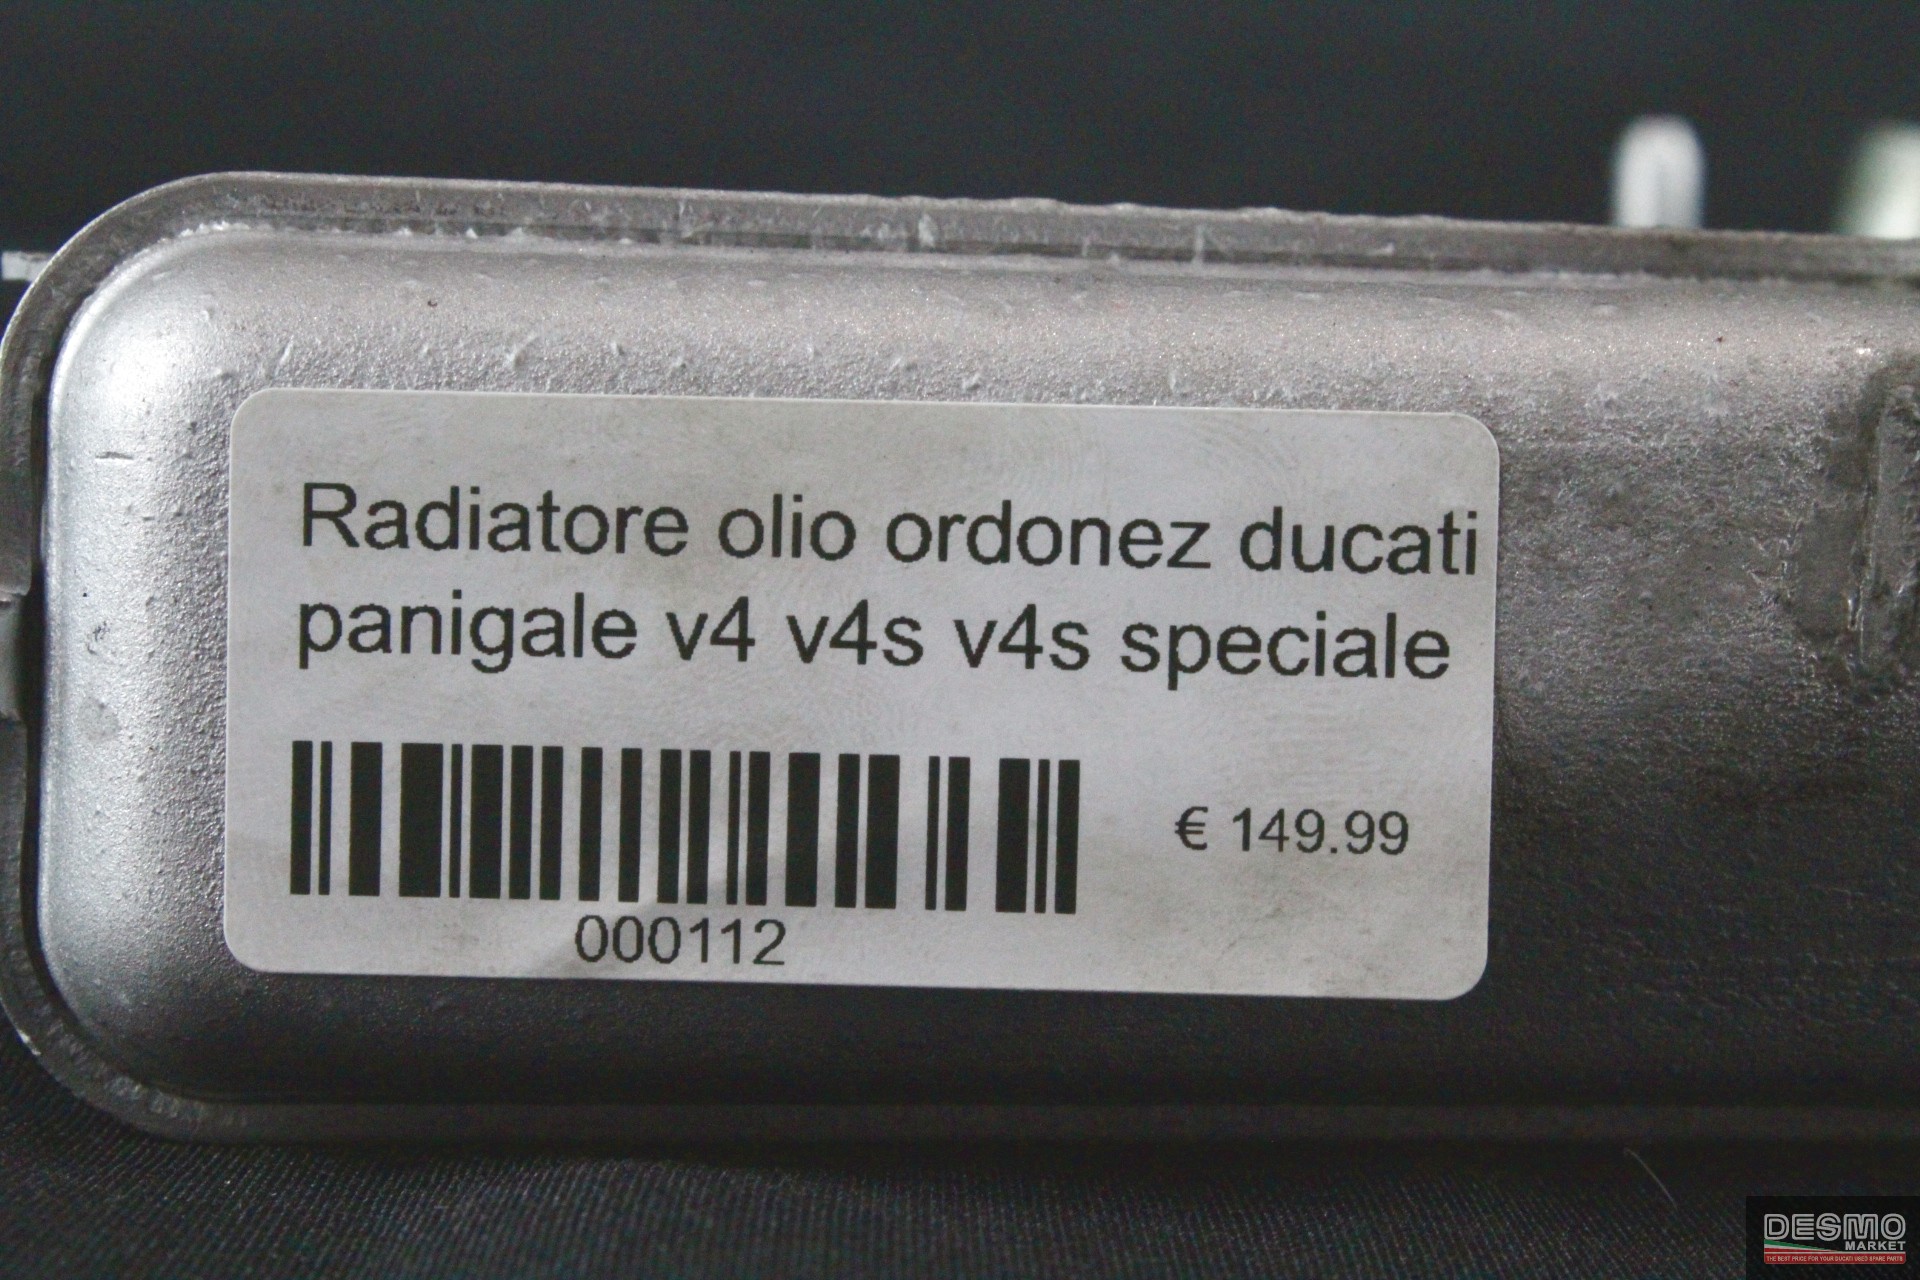 Radiatore olio ordonez ducati panigale v4 v4s v4s speciale